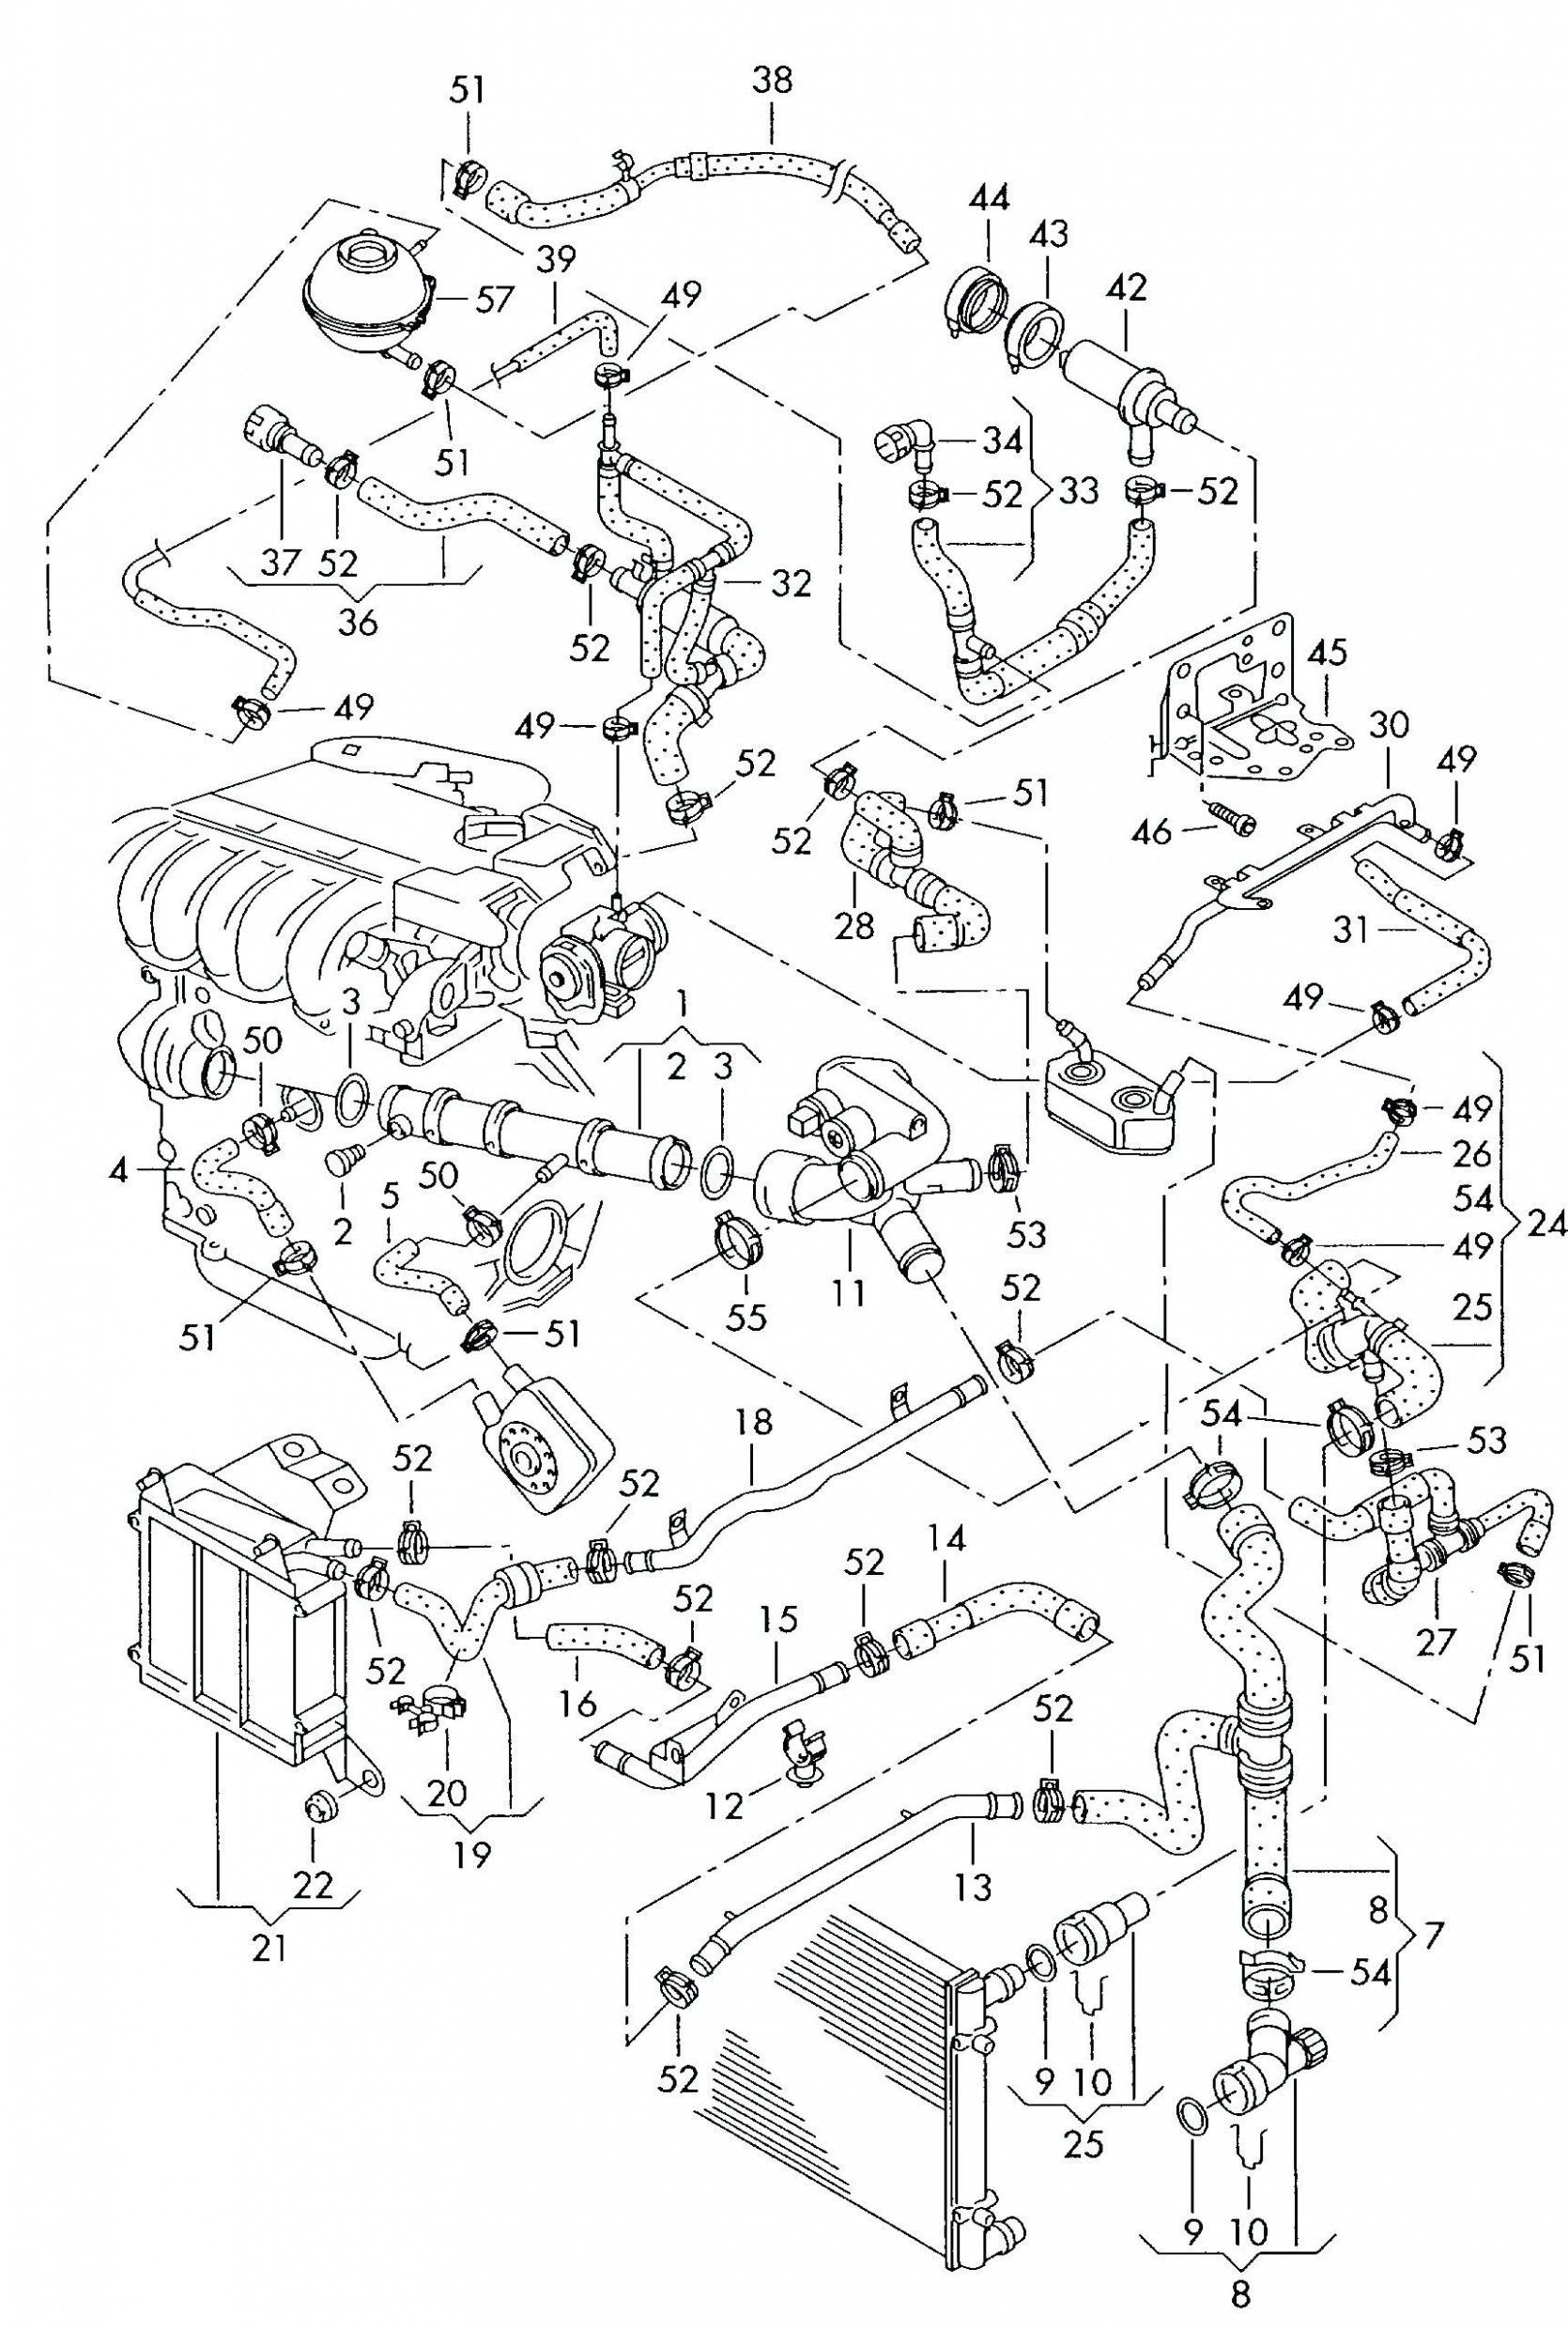 2000 Gti Vr6 Engine Diagram 6 Volkswagen 6 6 Engine Diagram Wiring Diagram Directory Engine Diagram 2001 Jetta Gti In 2020 Of 2000 Gti Vr6 Engine Diagram